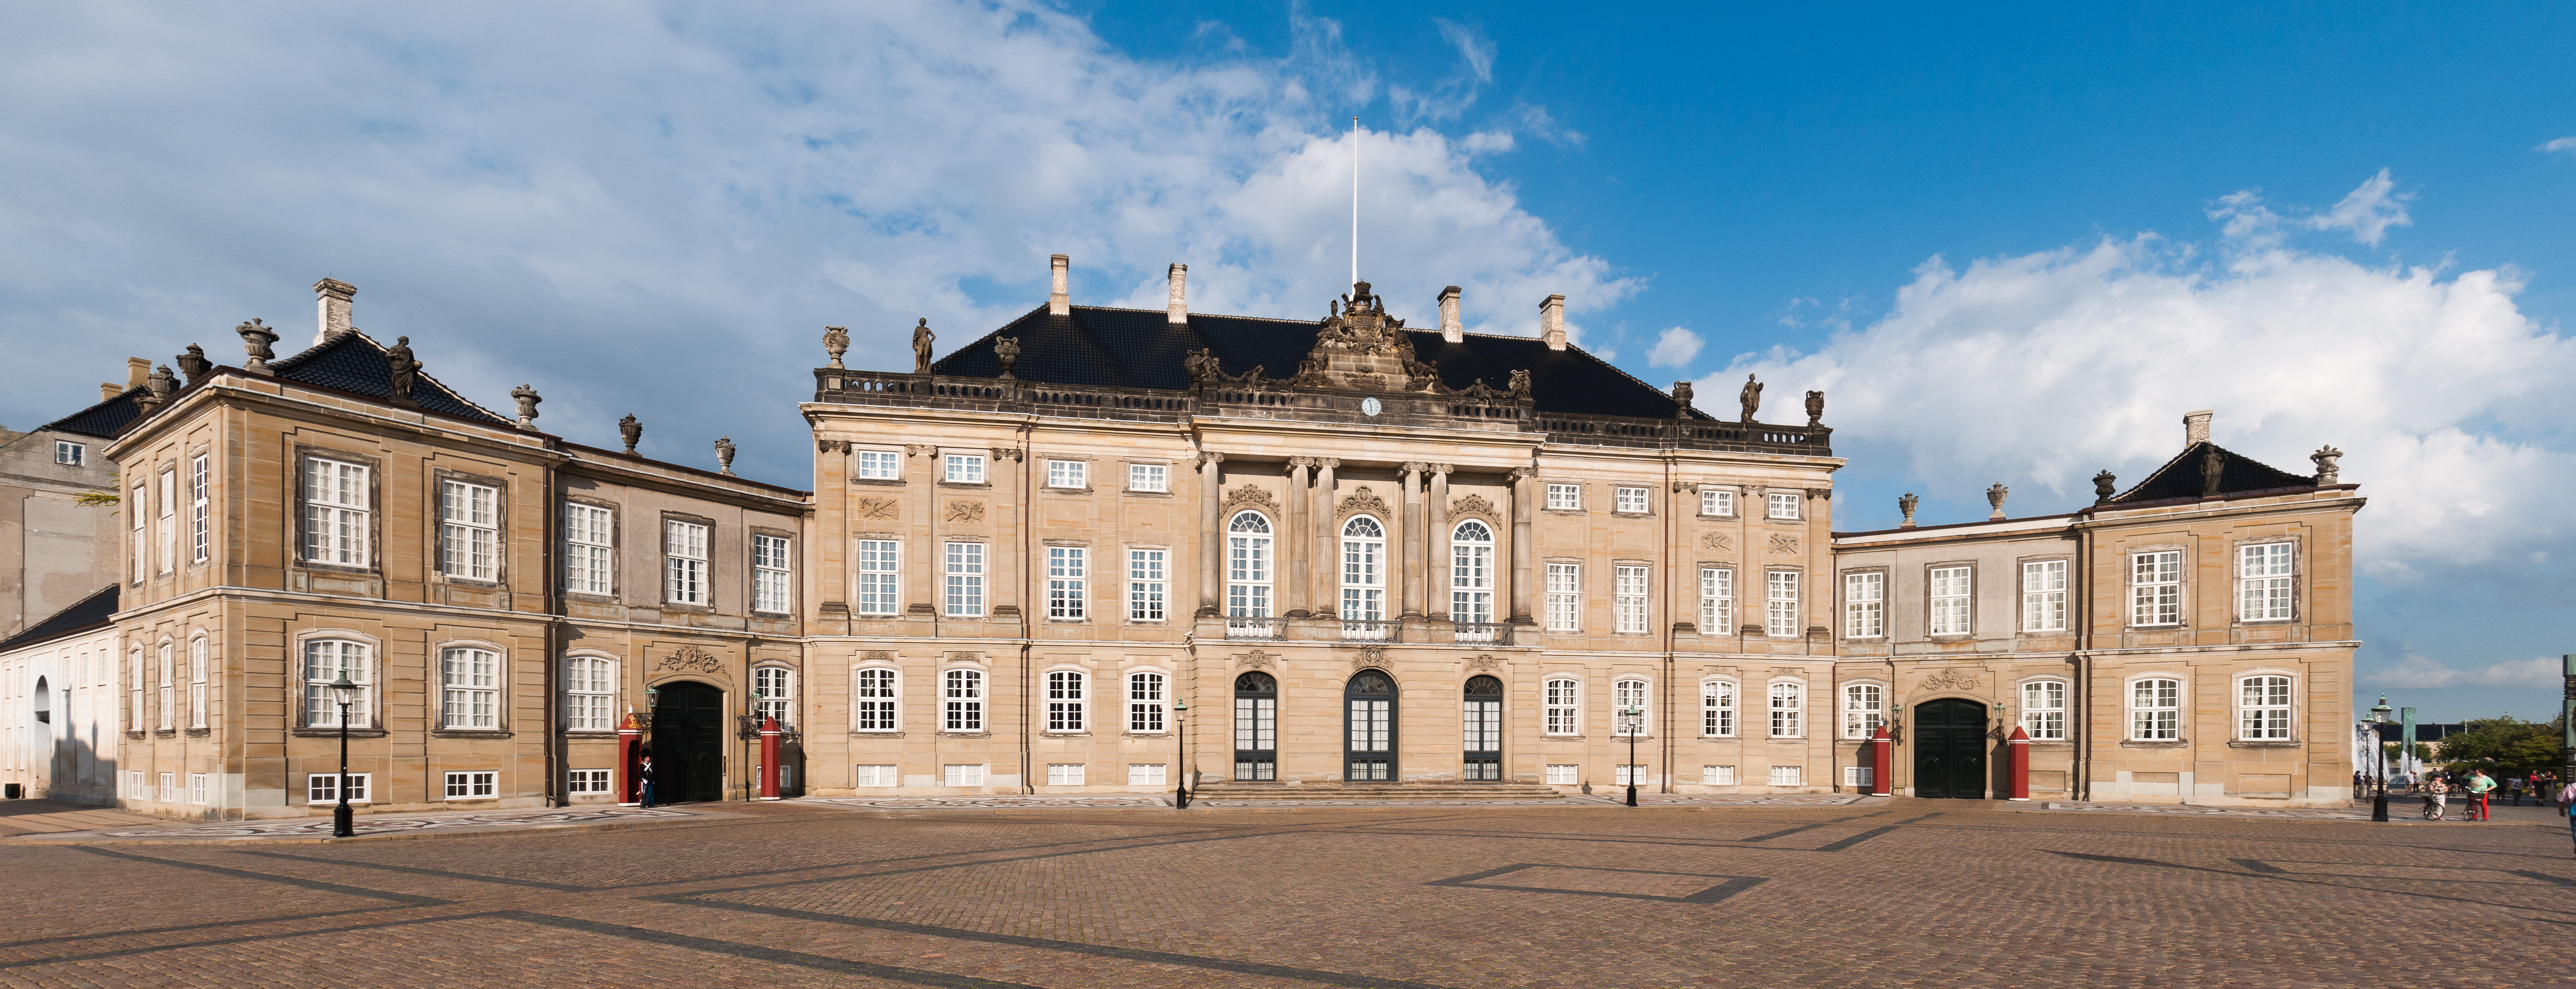 Amalienborg Palace Copenhagen 2014 02